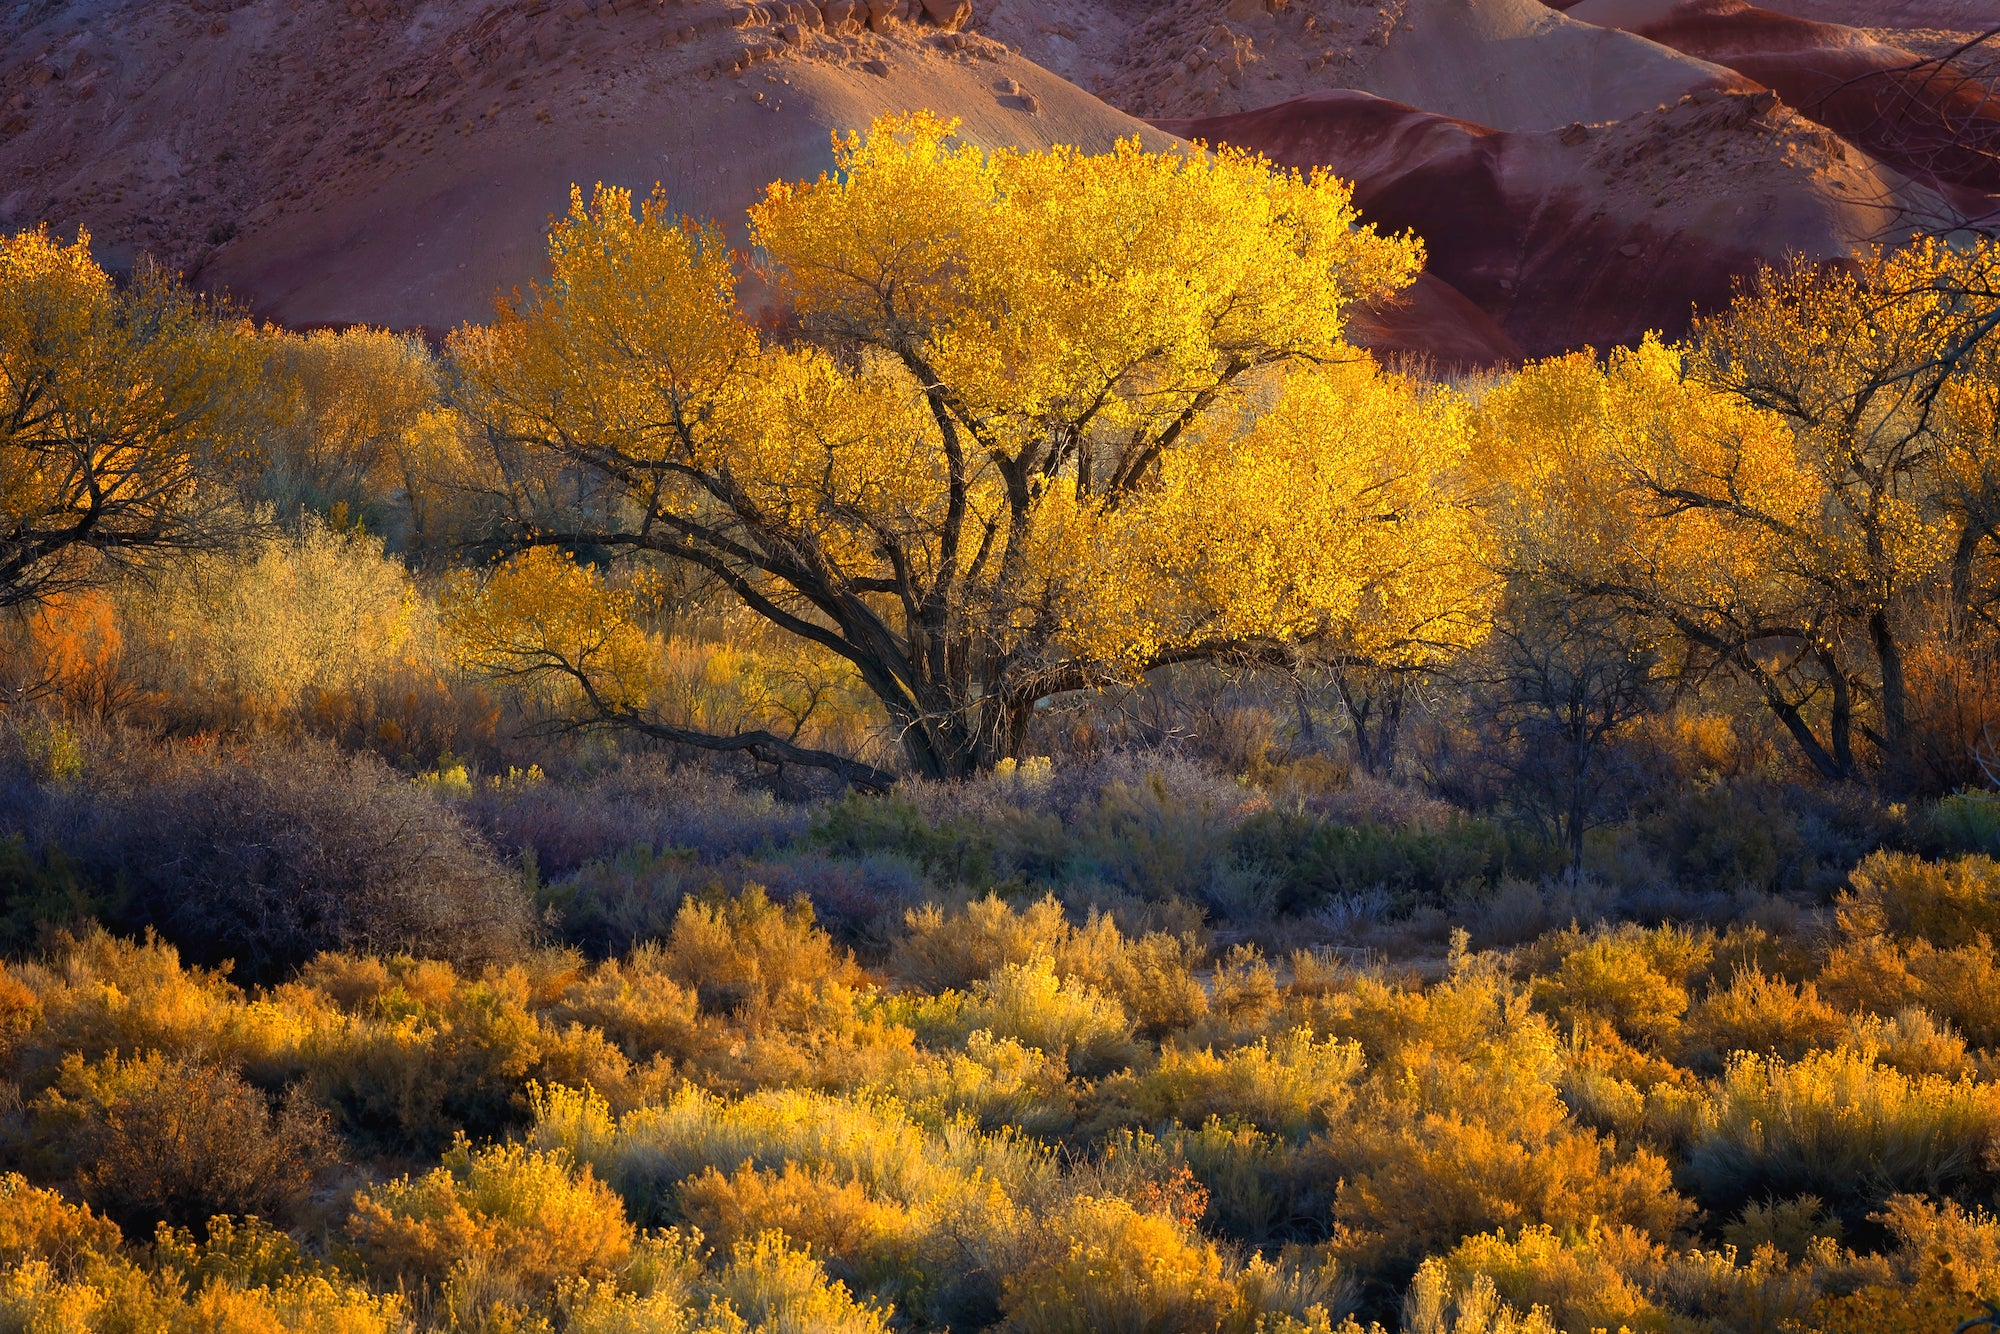 Autumn in Utah Badlands